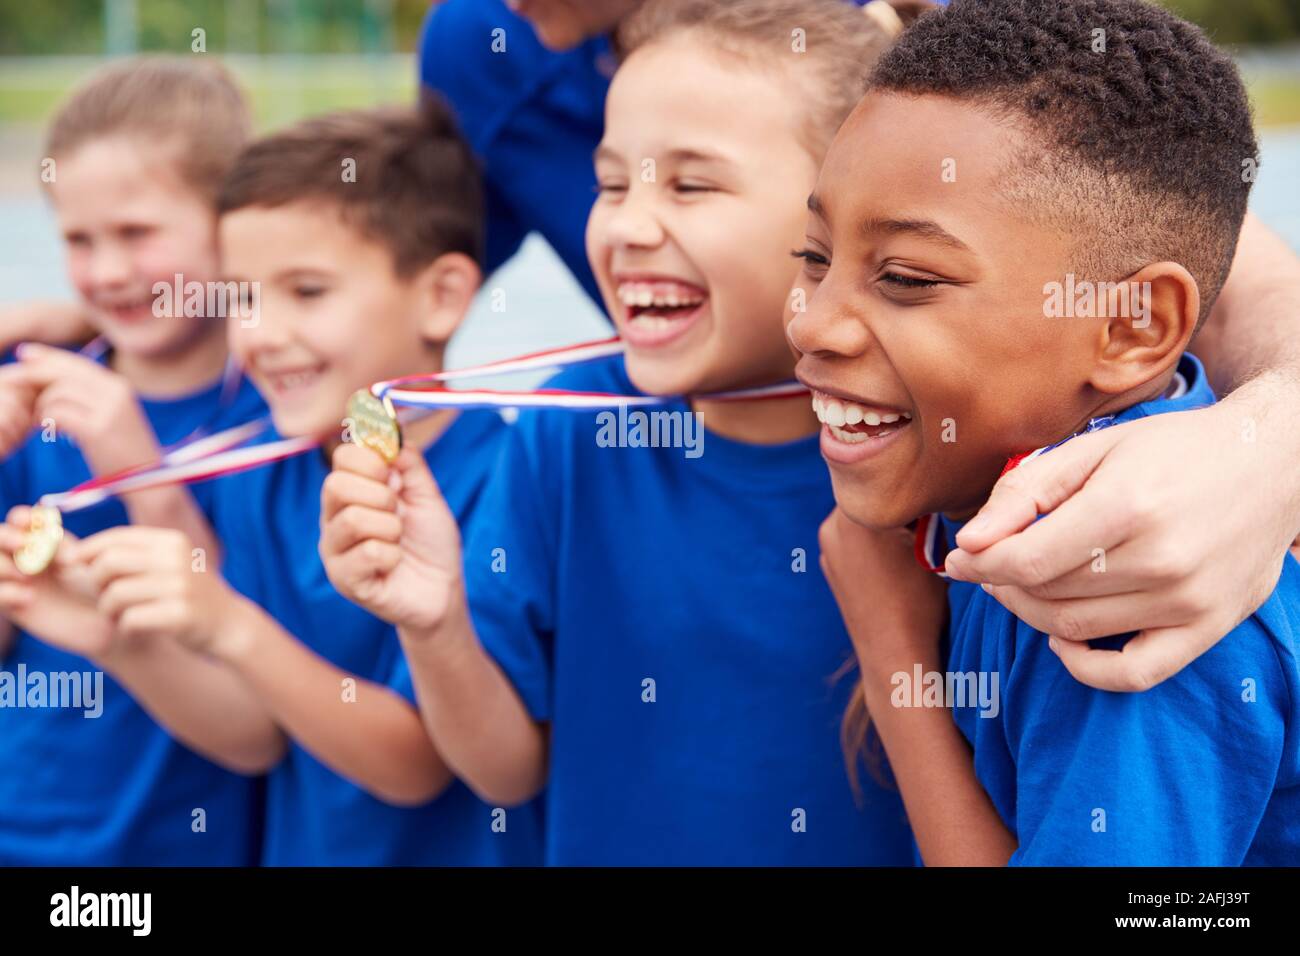 Les enfants avec entraîneur masculin montrant outre de gagnants de médailles sur la Journée des sports Banque D'Images